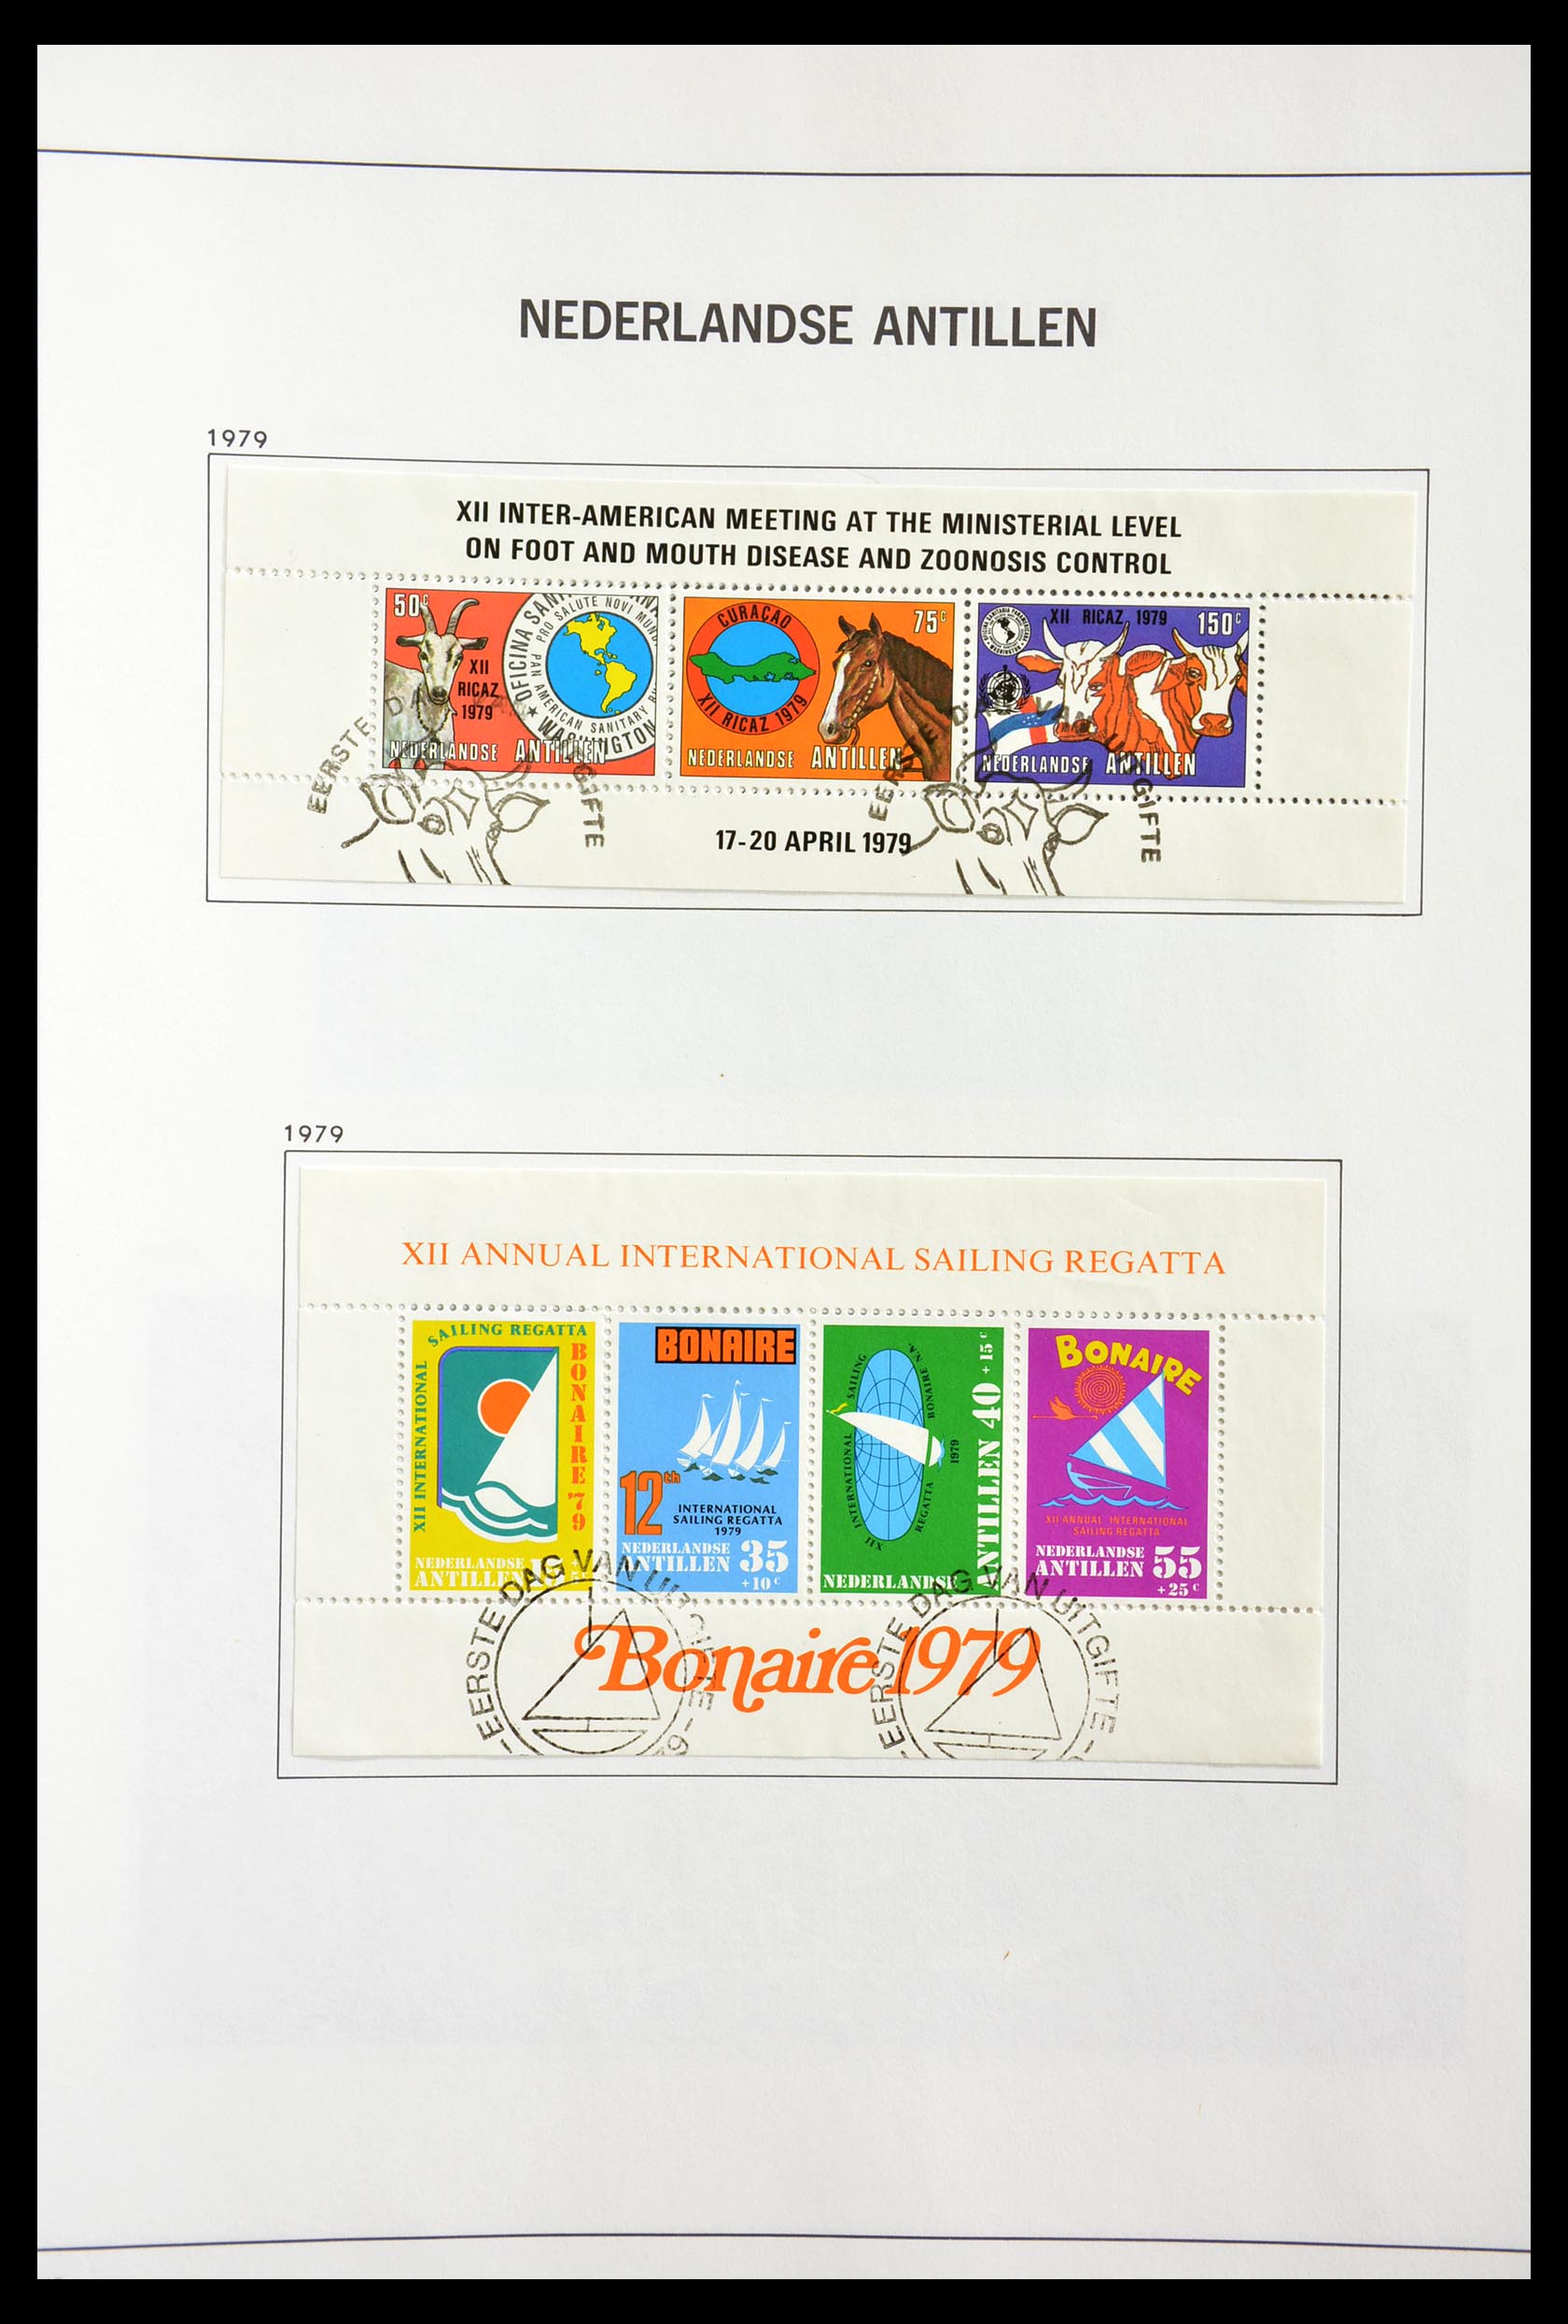 29189 102 - 29189 Netherlands Antilles 1949-1999.